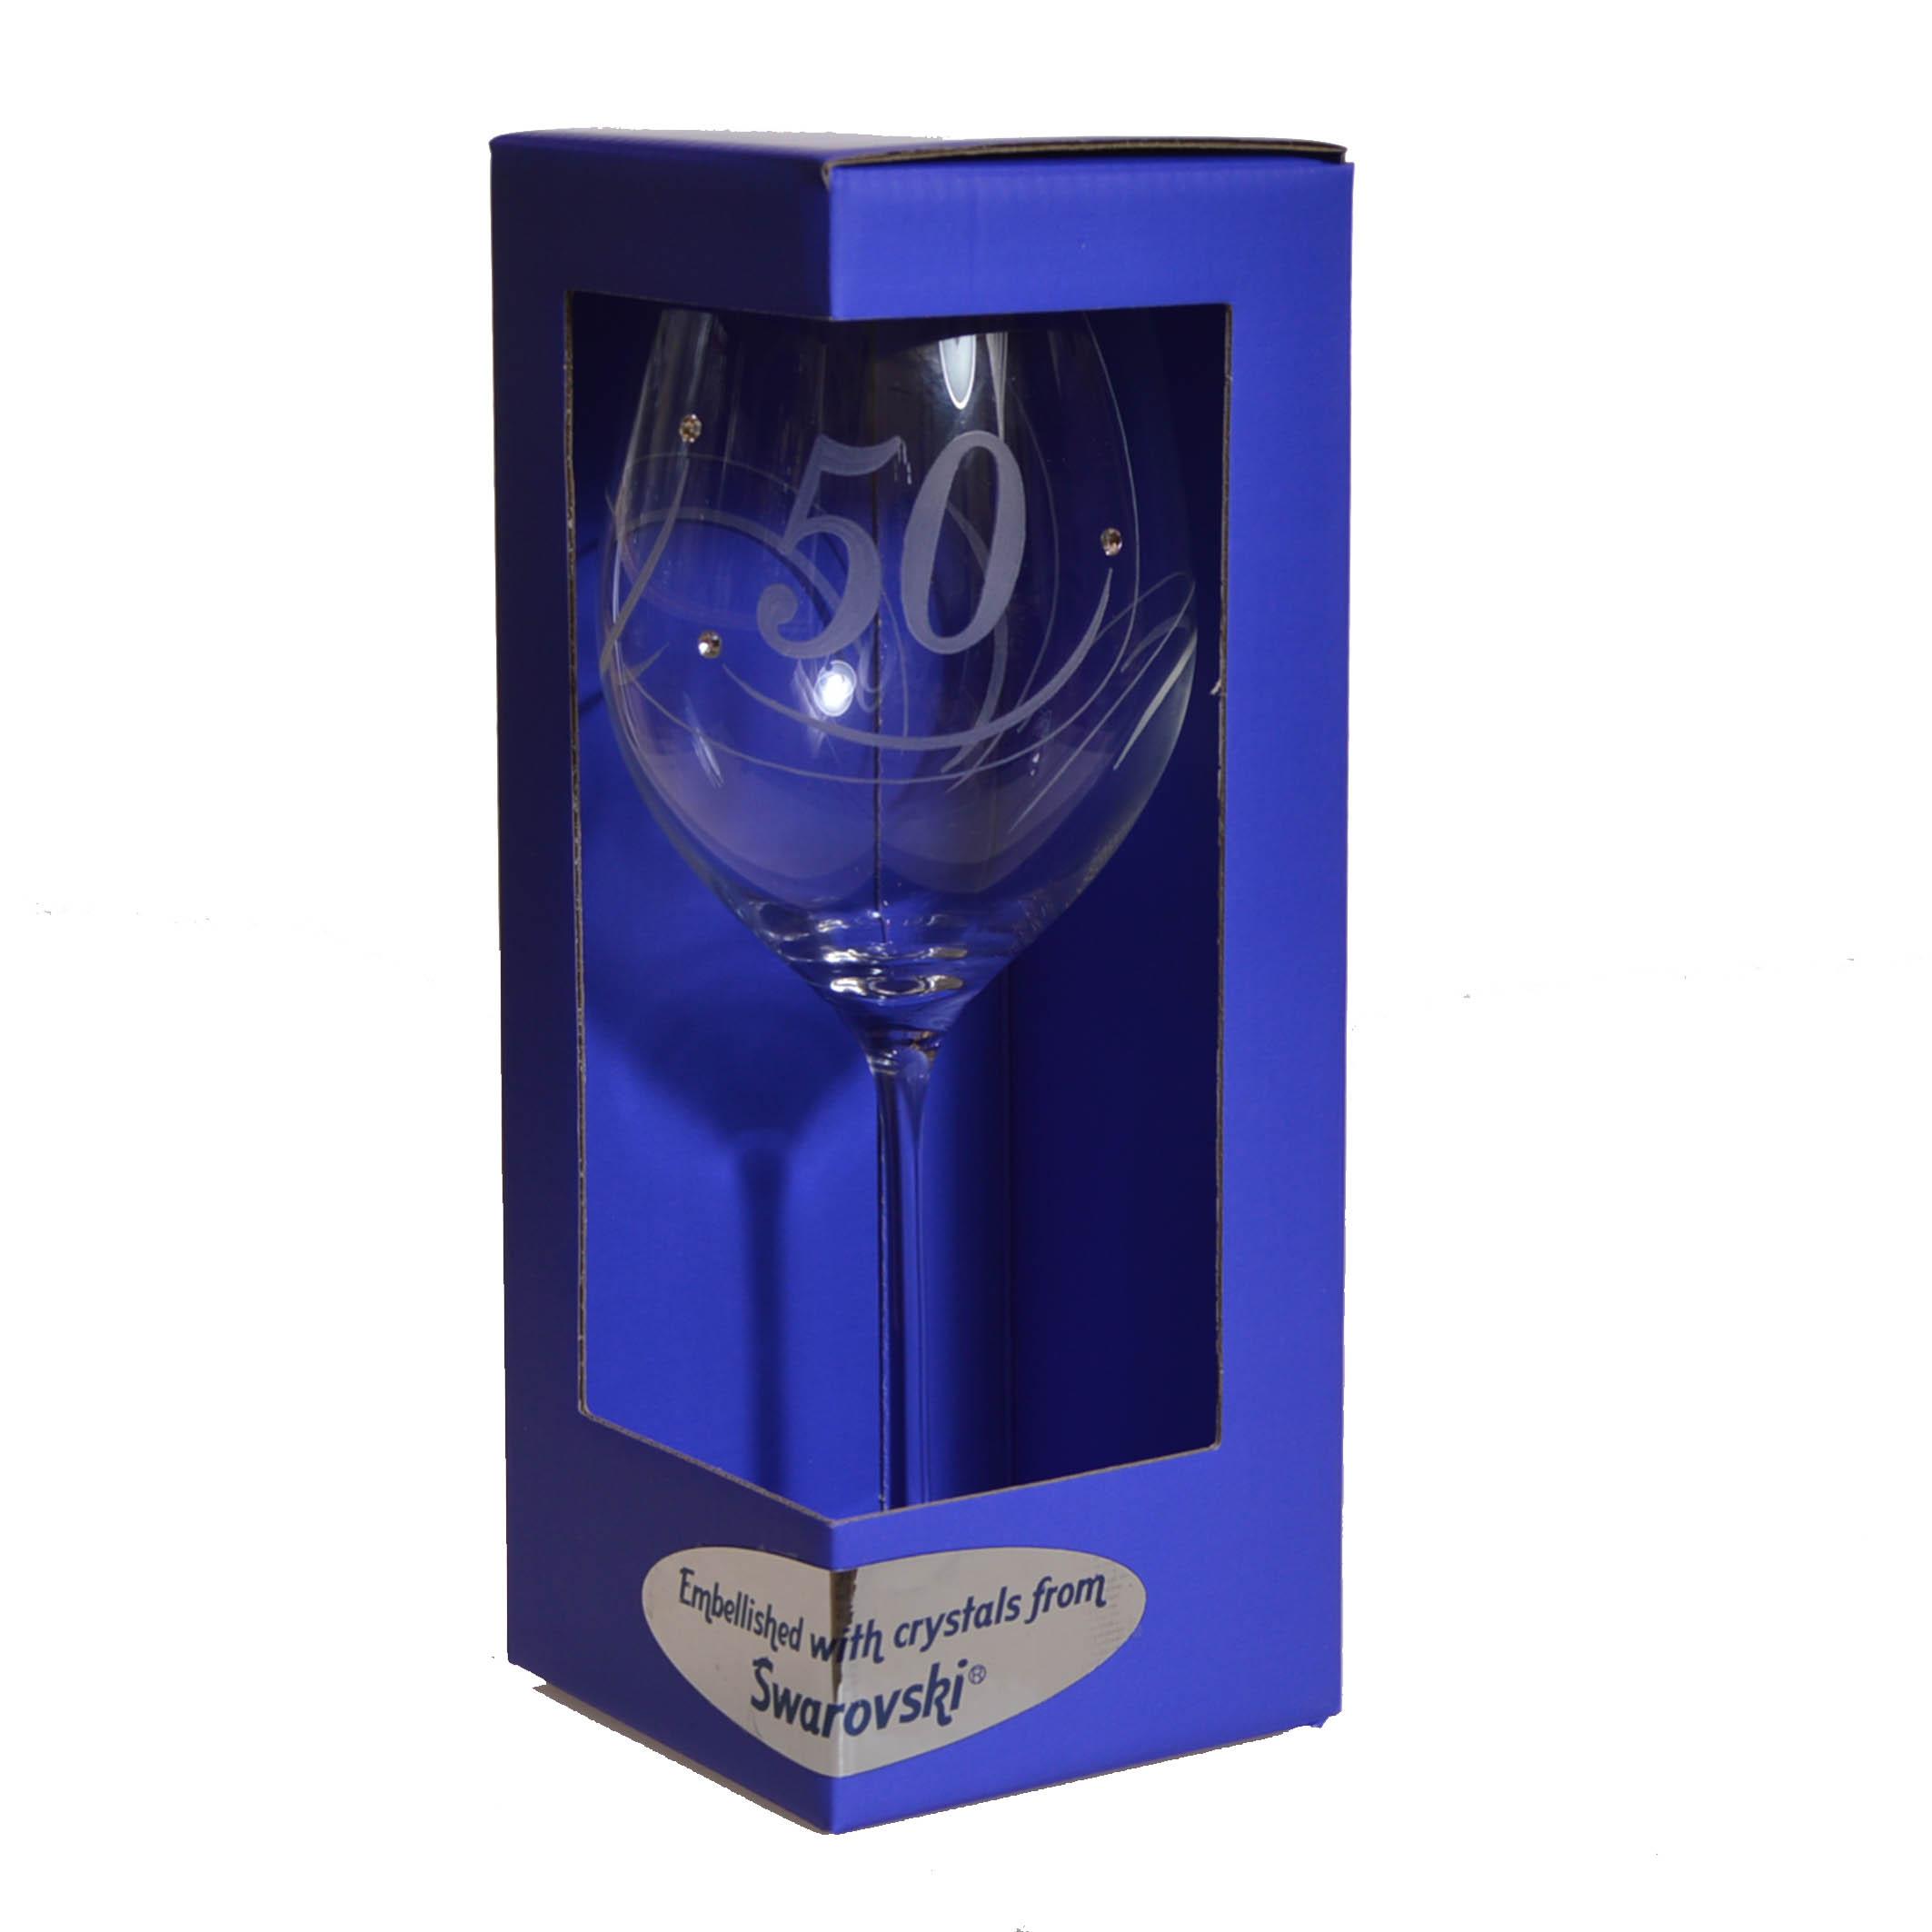 Výročný pohár na víno swarovski - K 50. narodeninám